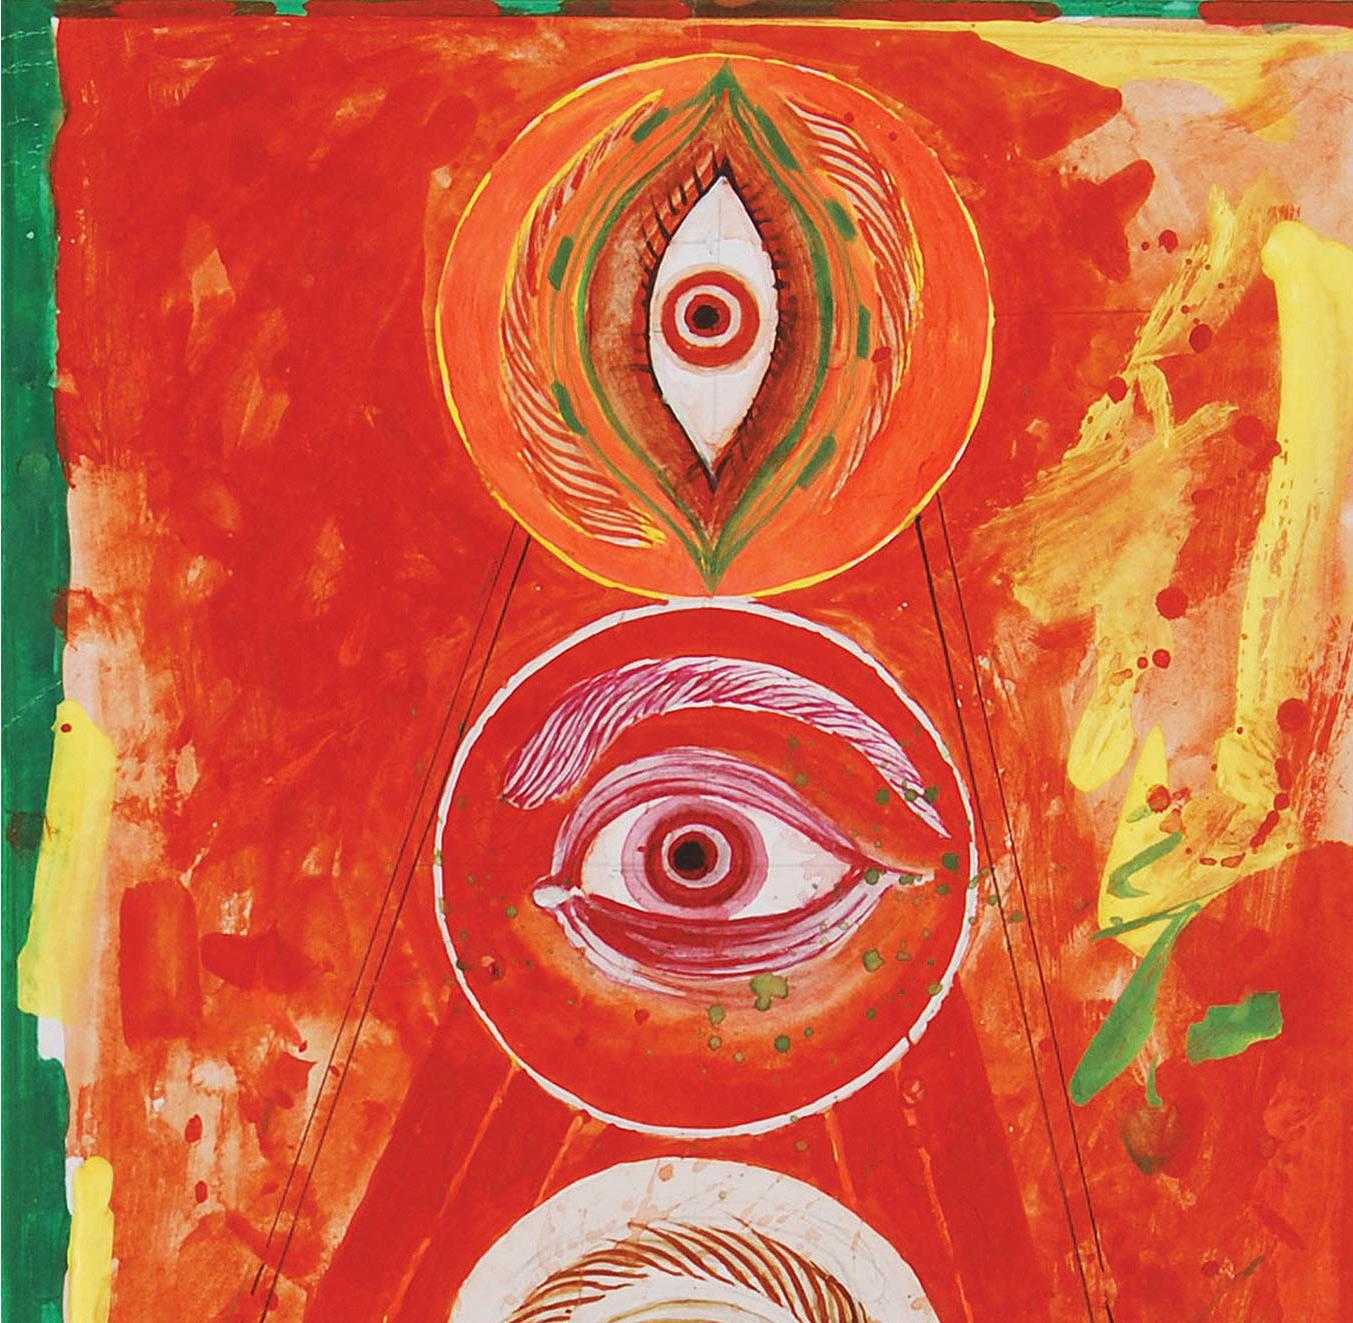 Durga 97, technique mixte sur panneau, rouge, jaune, vert par l'artiste indien « En stock » en vente 4